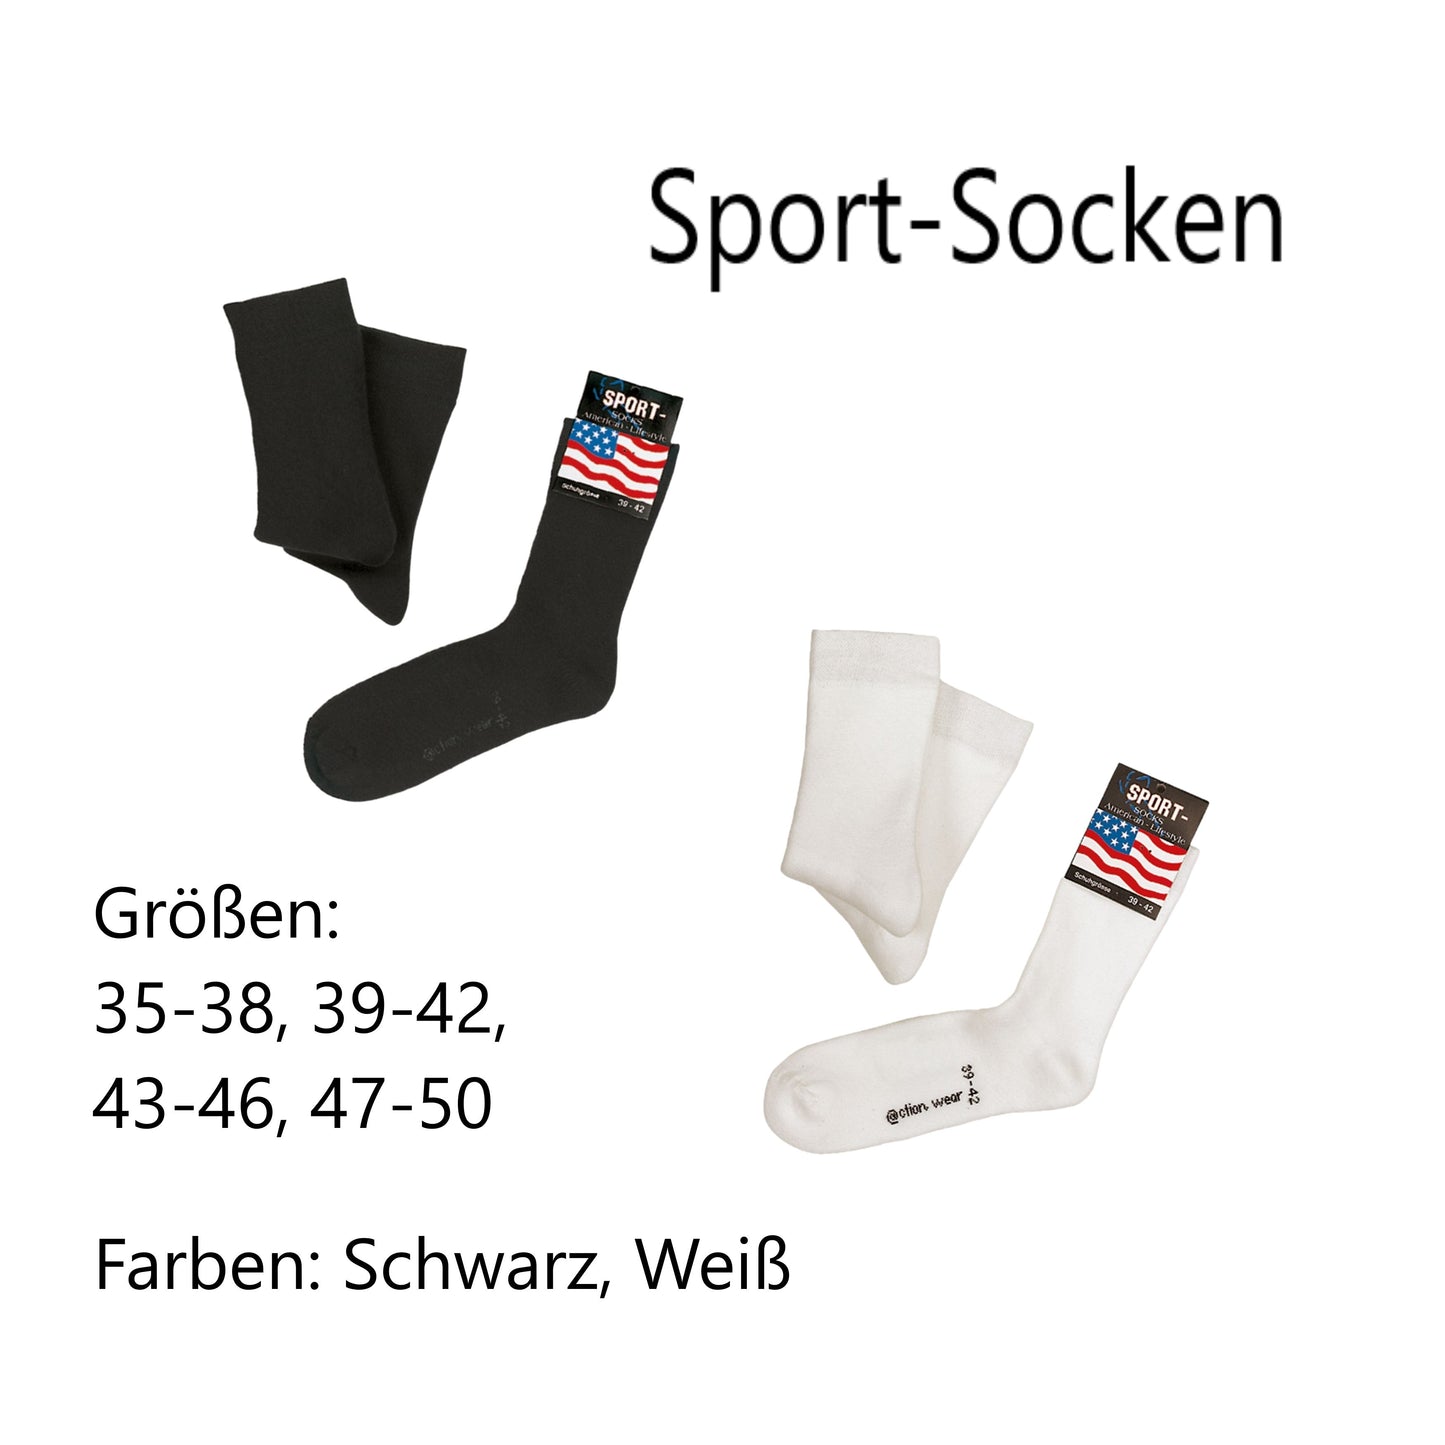 Sport-Socken mit Tiroler Adler und Wunschtext